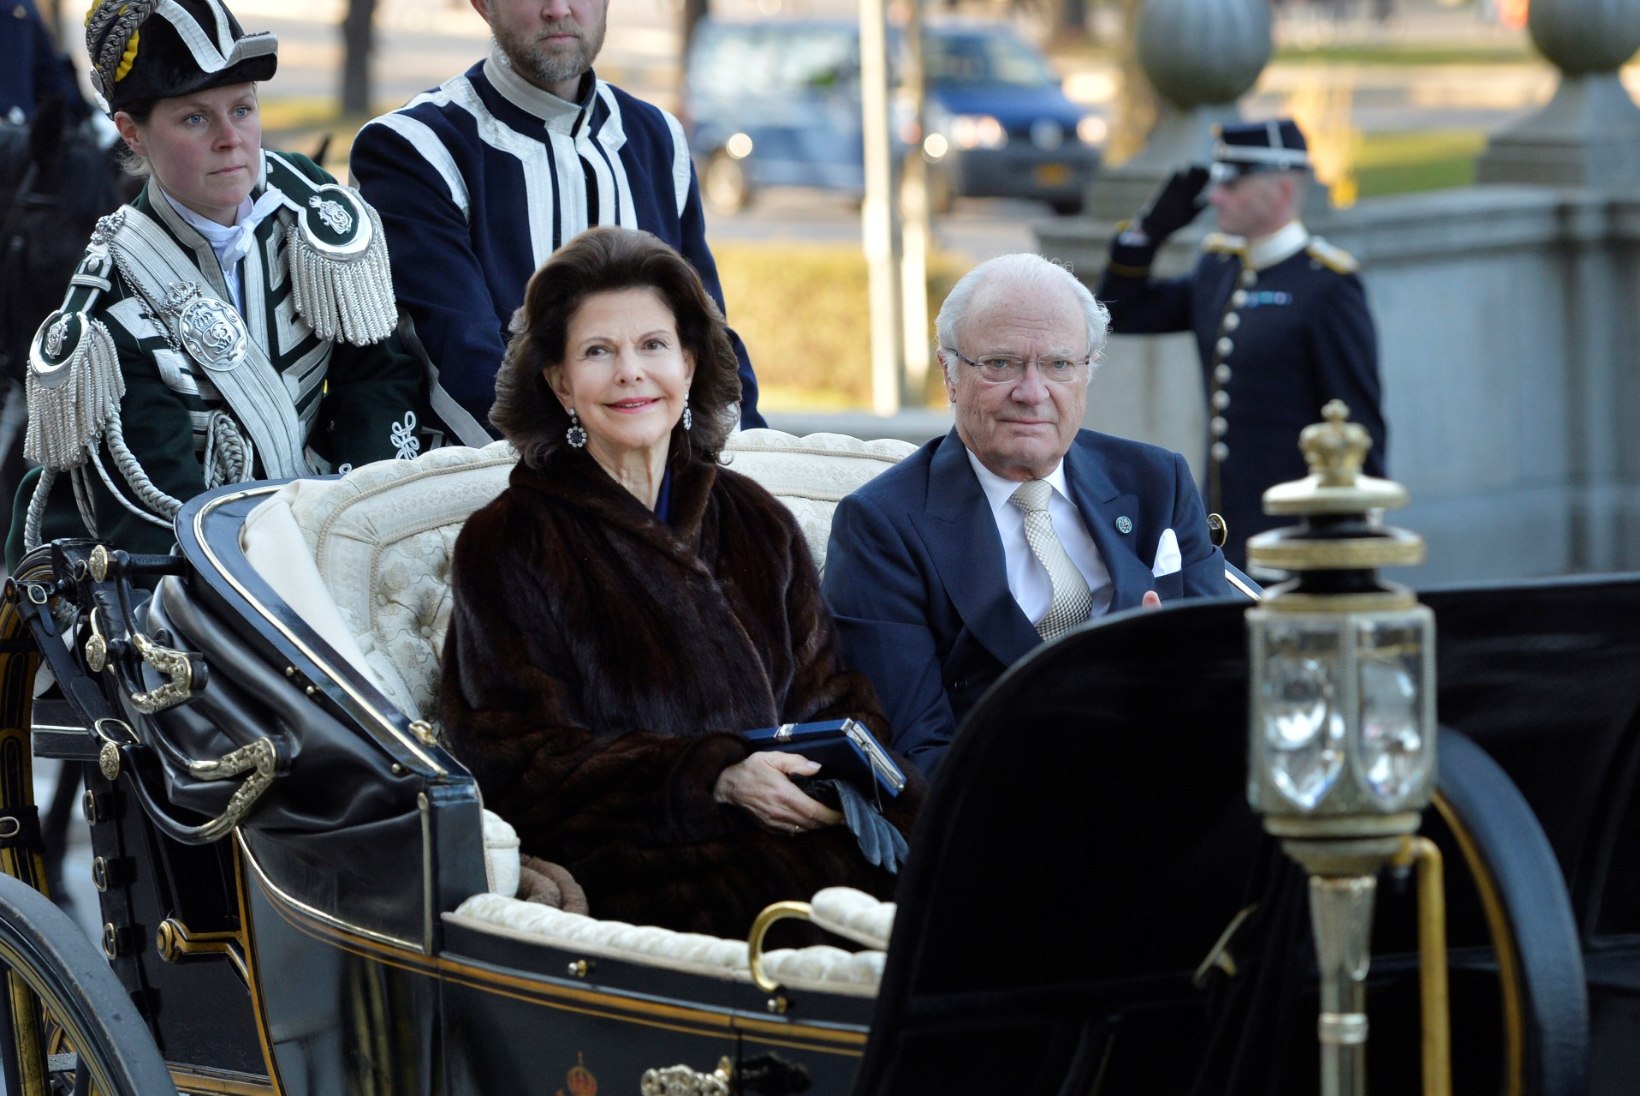 Rootsi kuninganna murdis kukkudes mitmest kohast käeluu